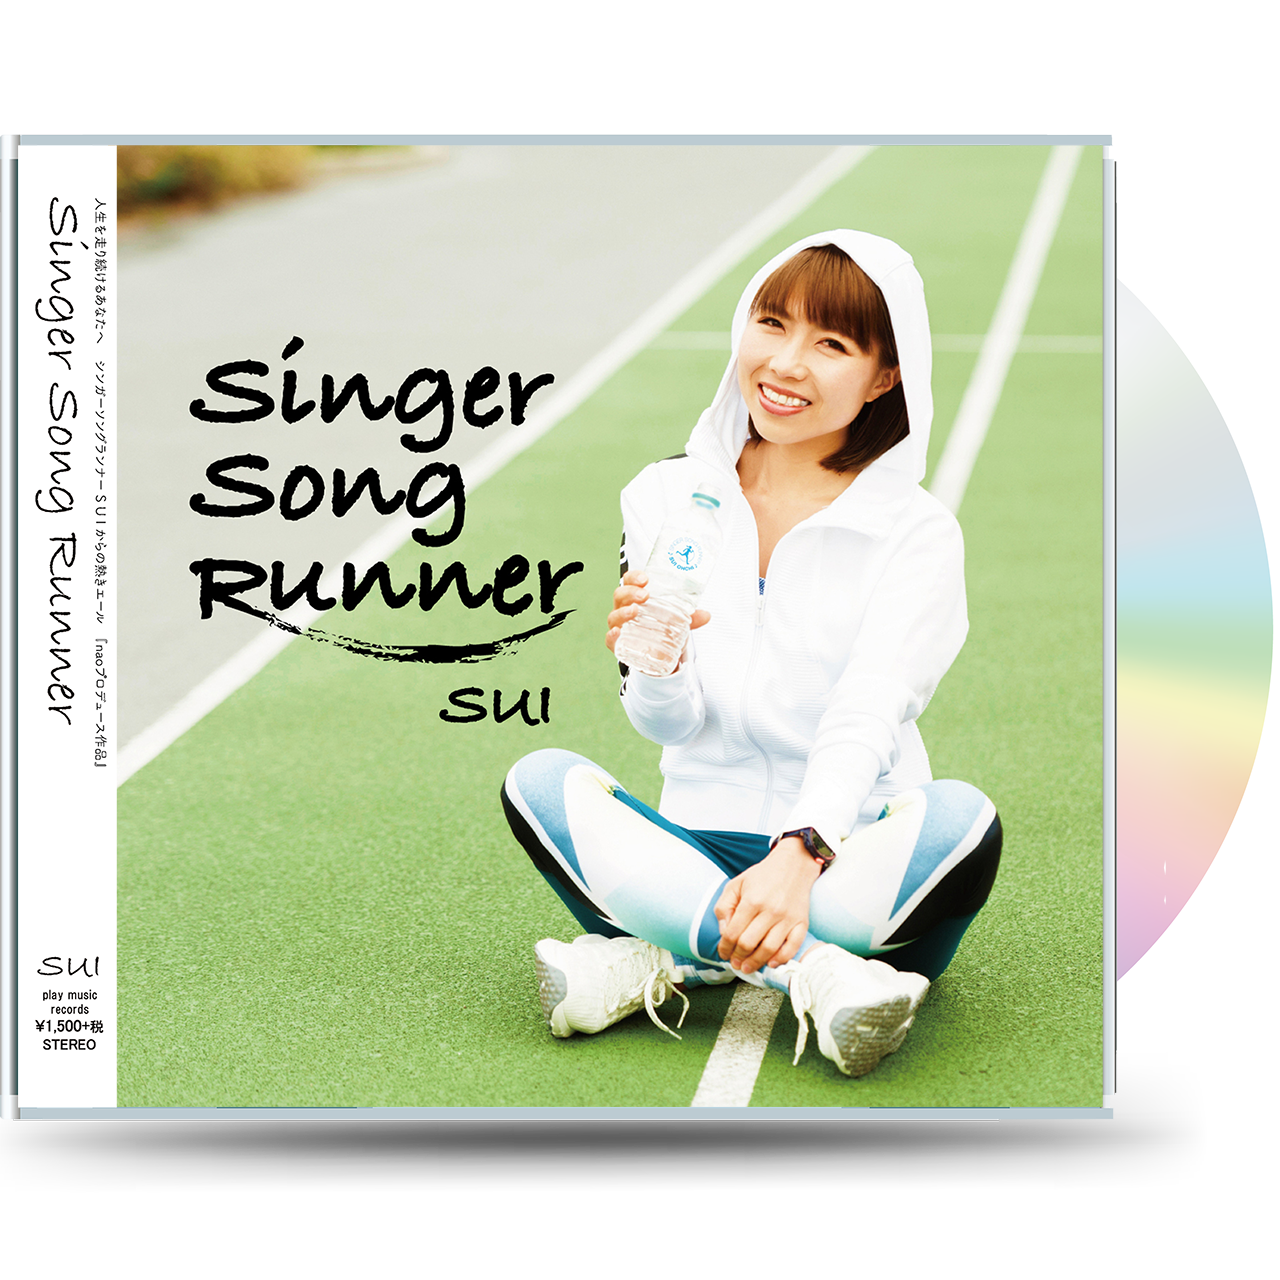 Singer Song Runner